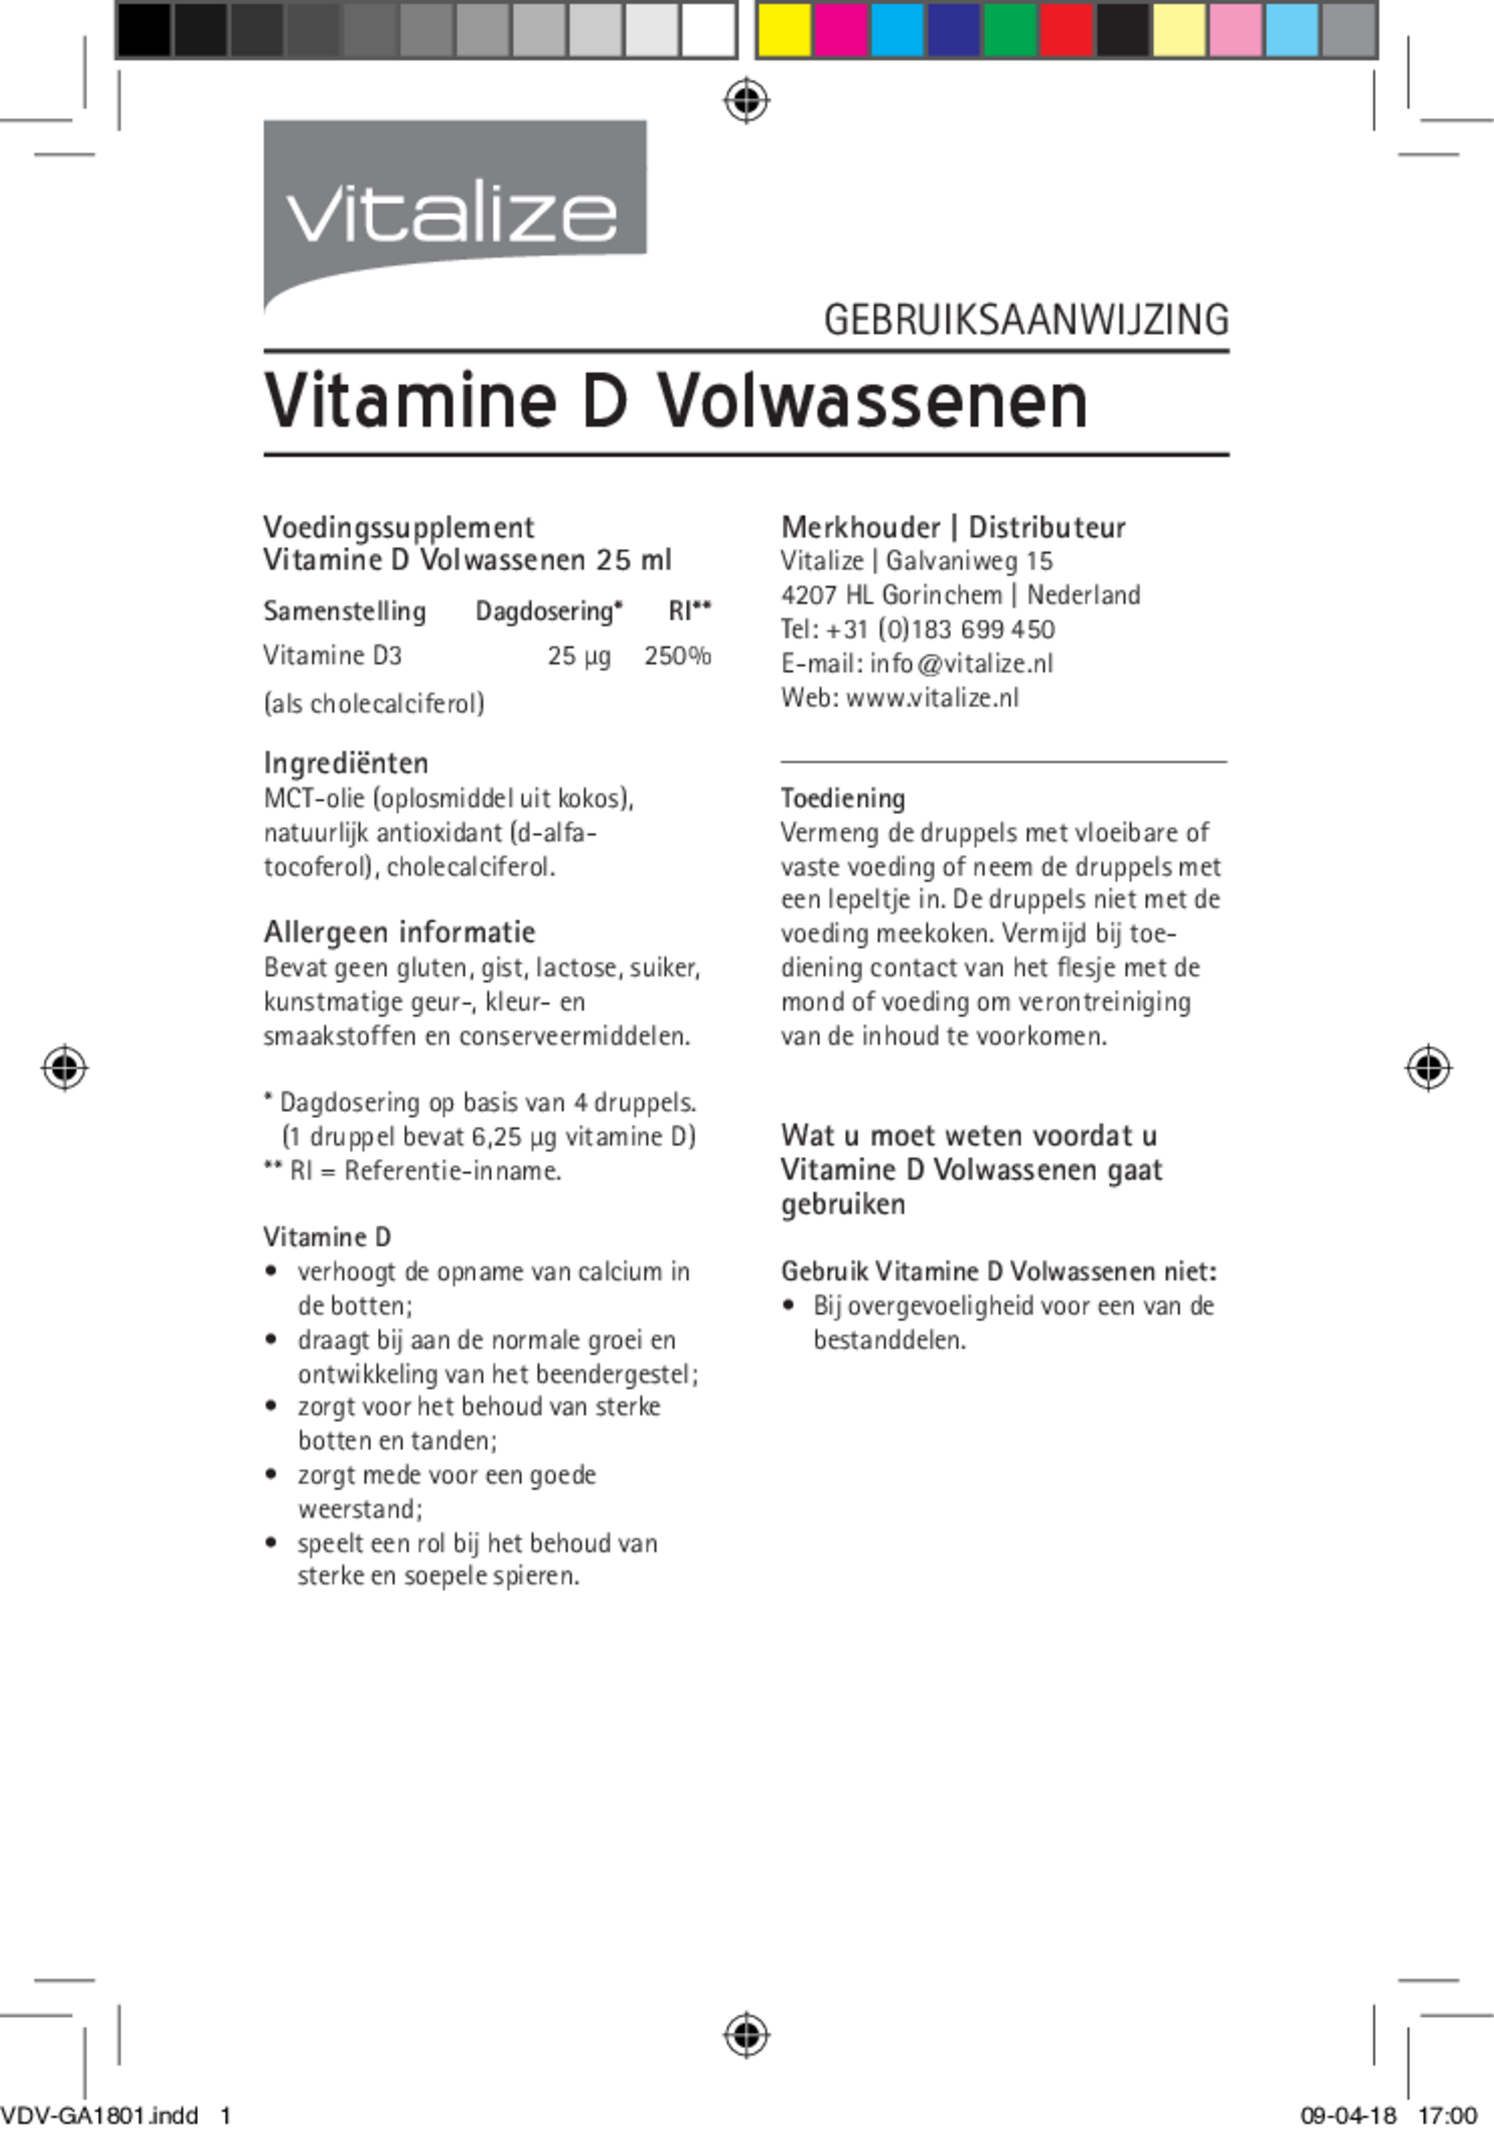 Vitamine D Druppels Volwassenen afbeelding van document #1, gebruiksaanwijzing